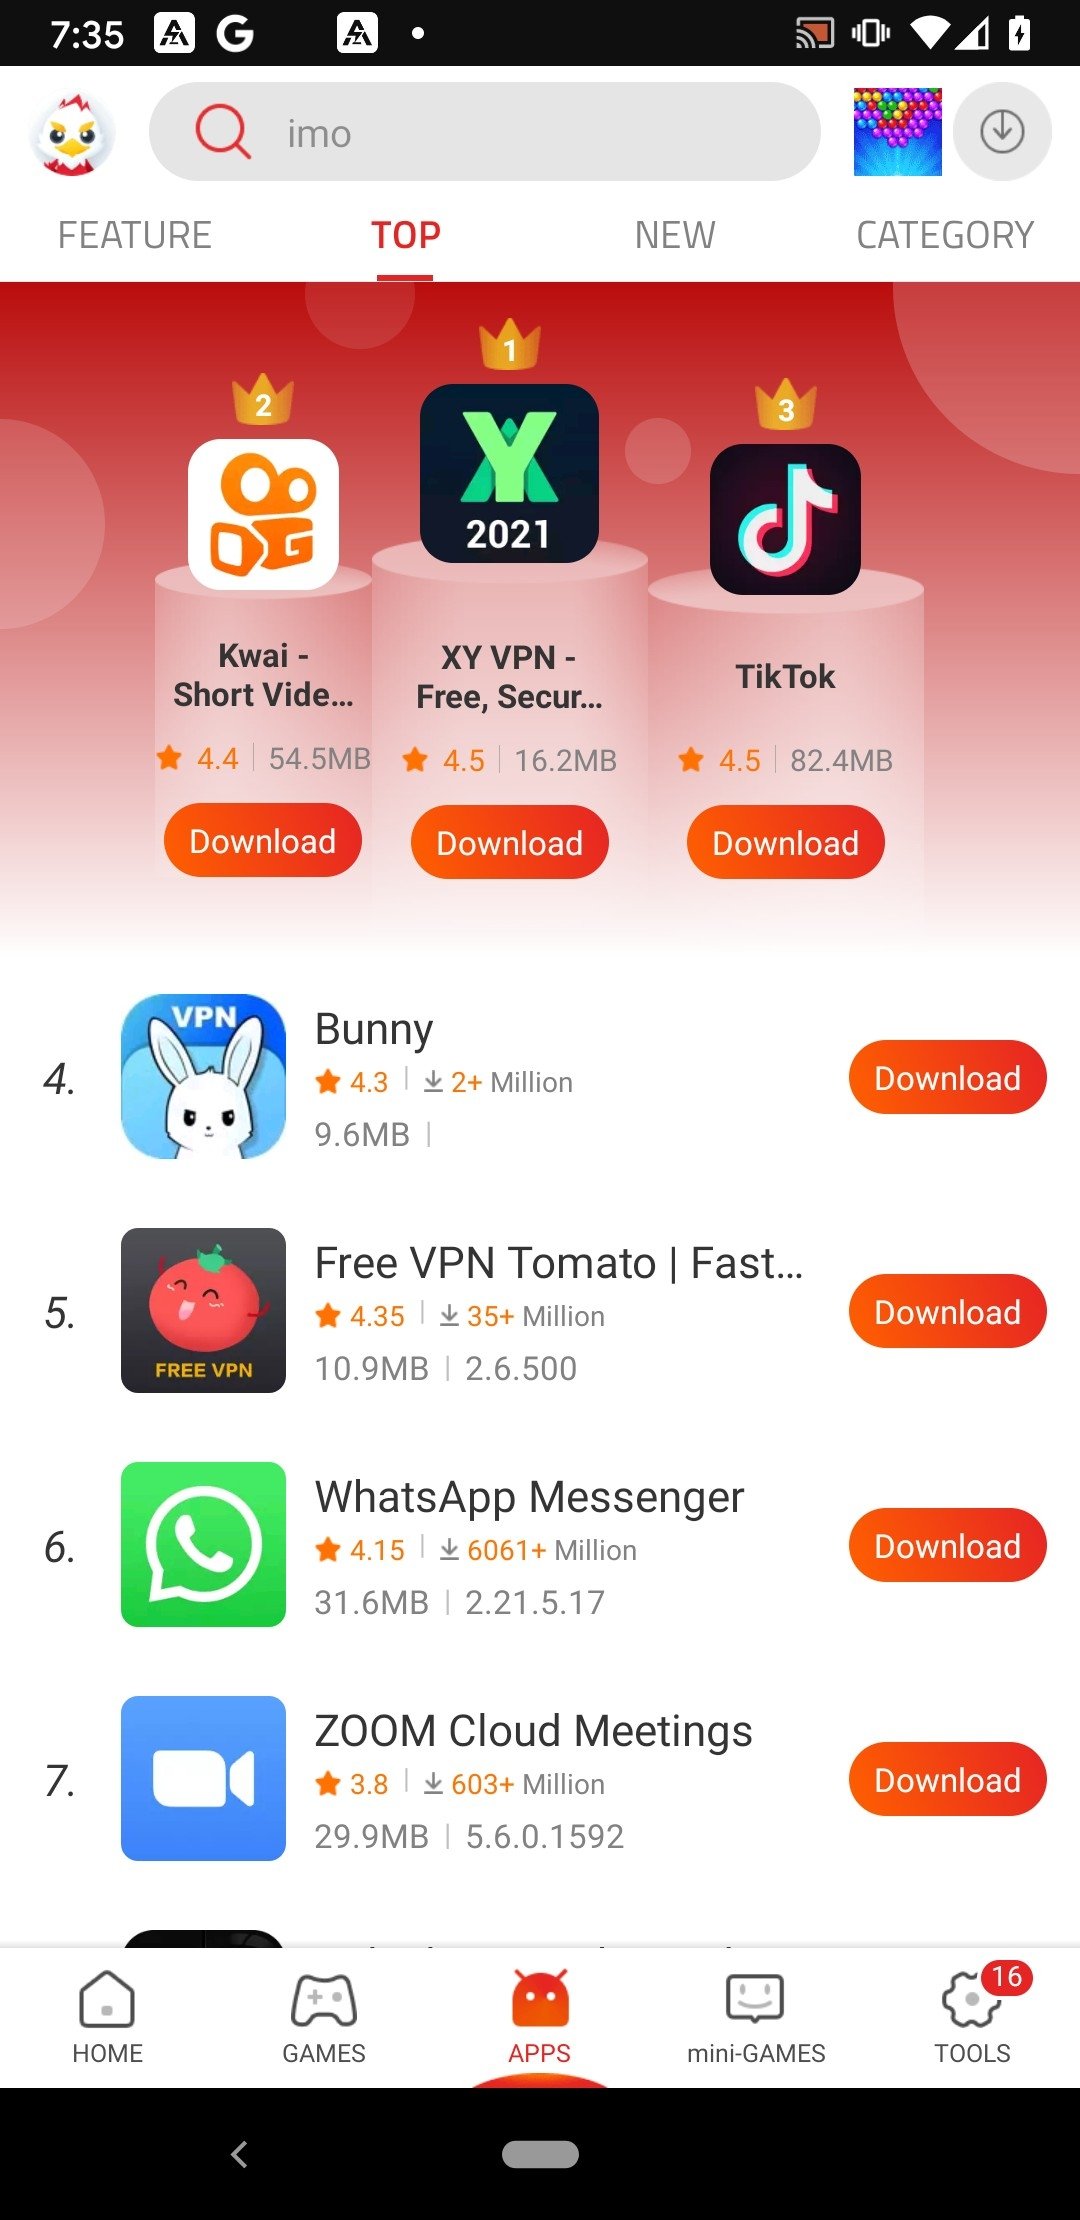 Malavida: Descargar Aplicaciones para Android Gratis. Apps 100